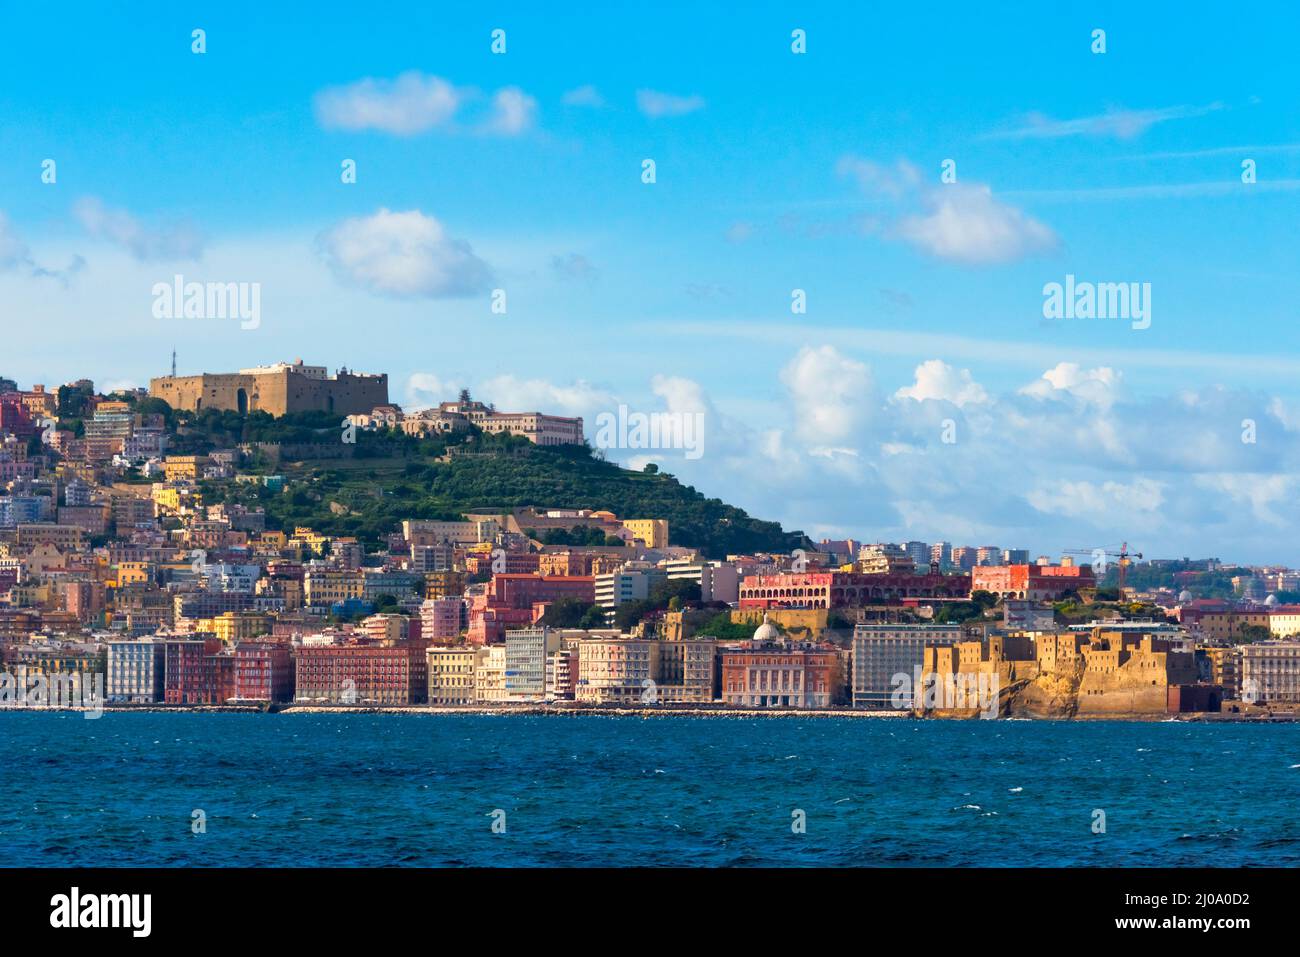 Castel sant'Elmo in cima a una collina ed edifici lungo la costa, Napoli, Regione Campania, Italia Foto Stock